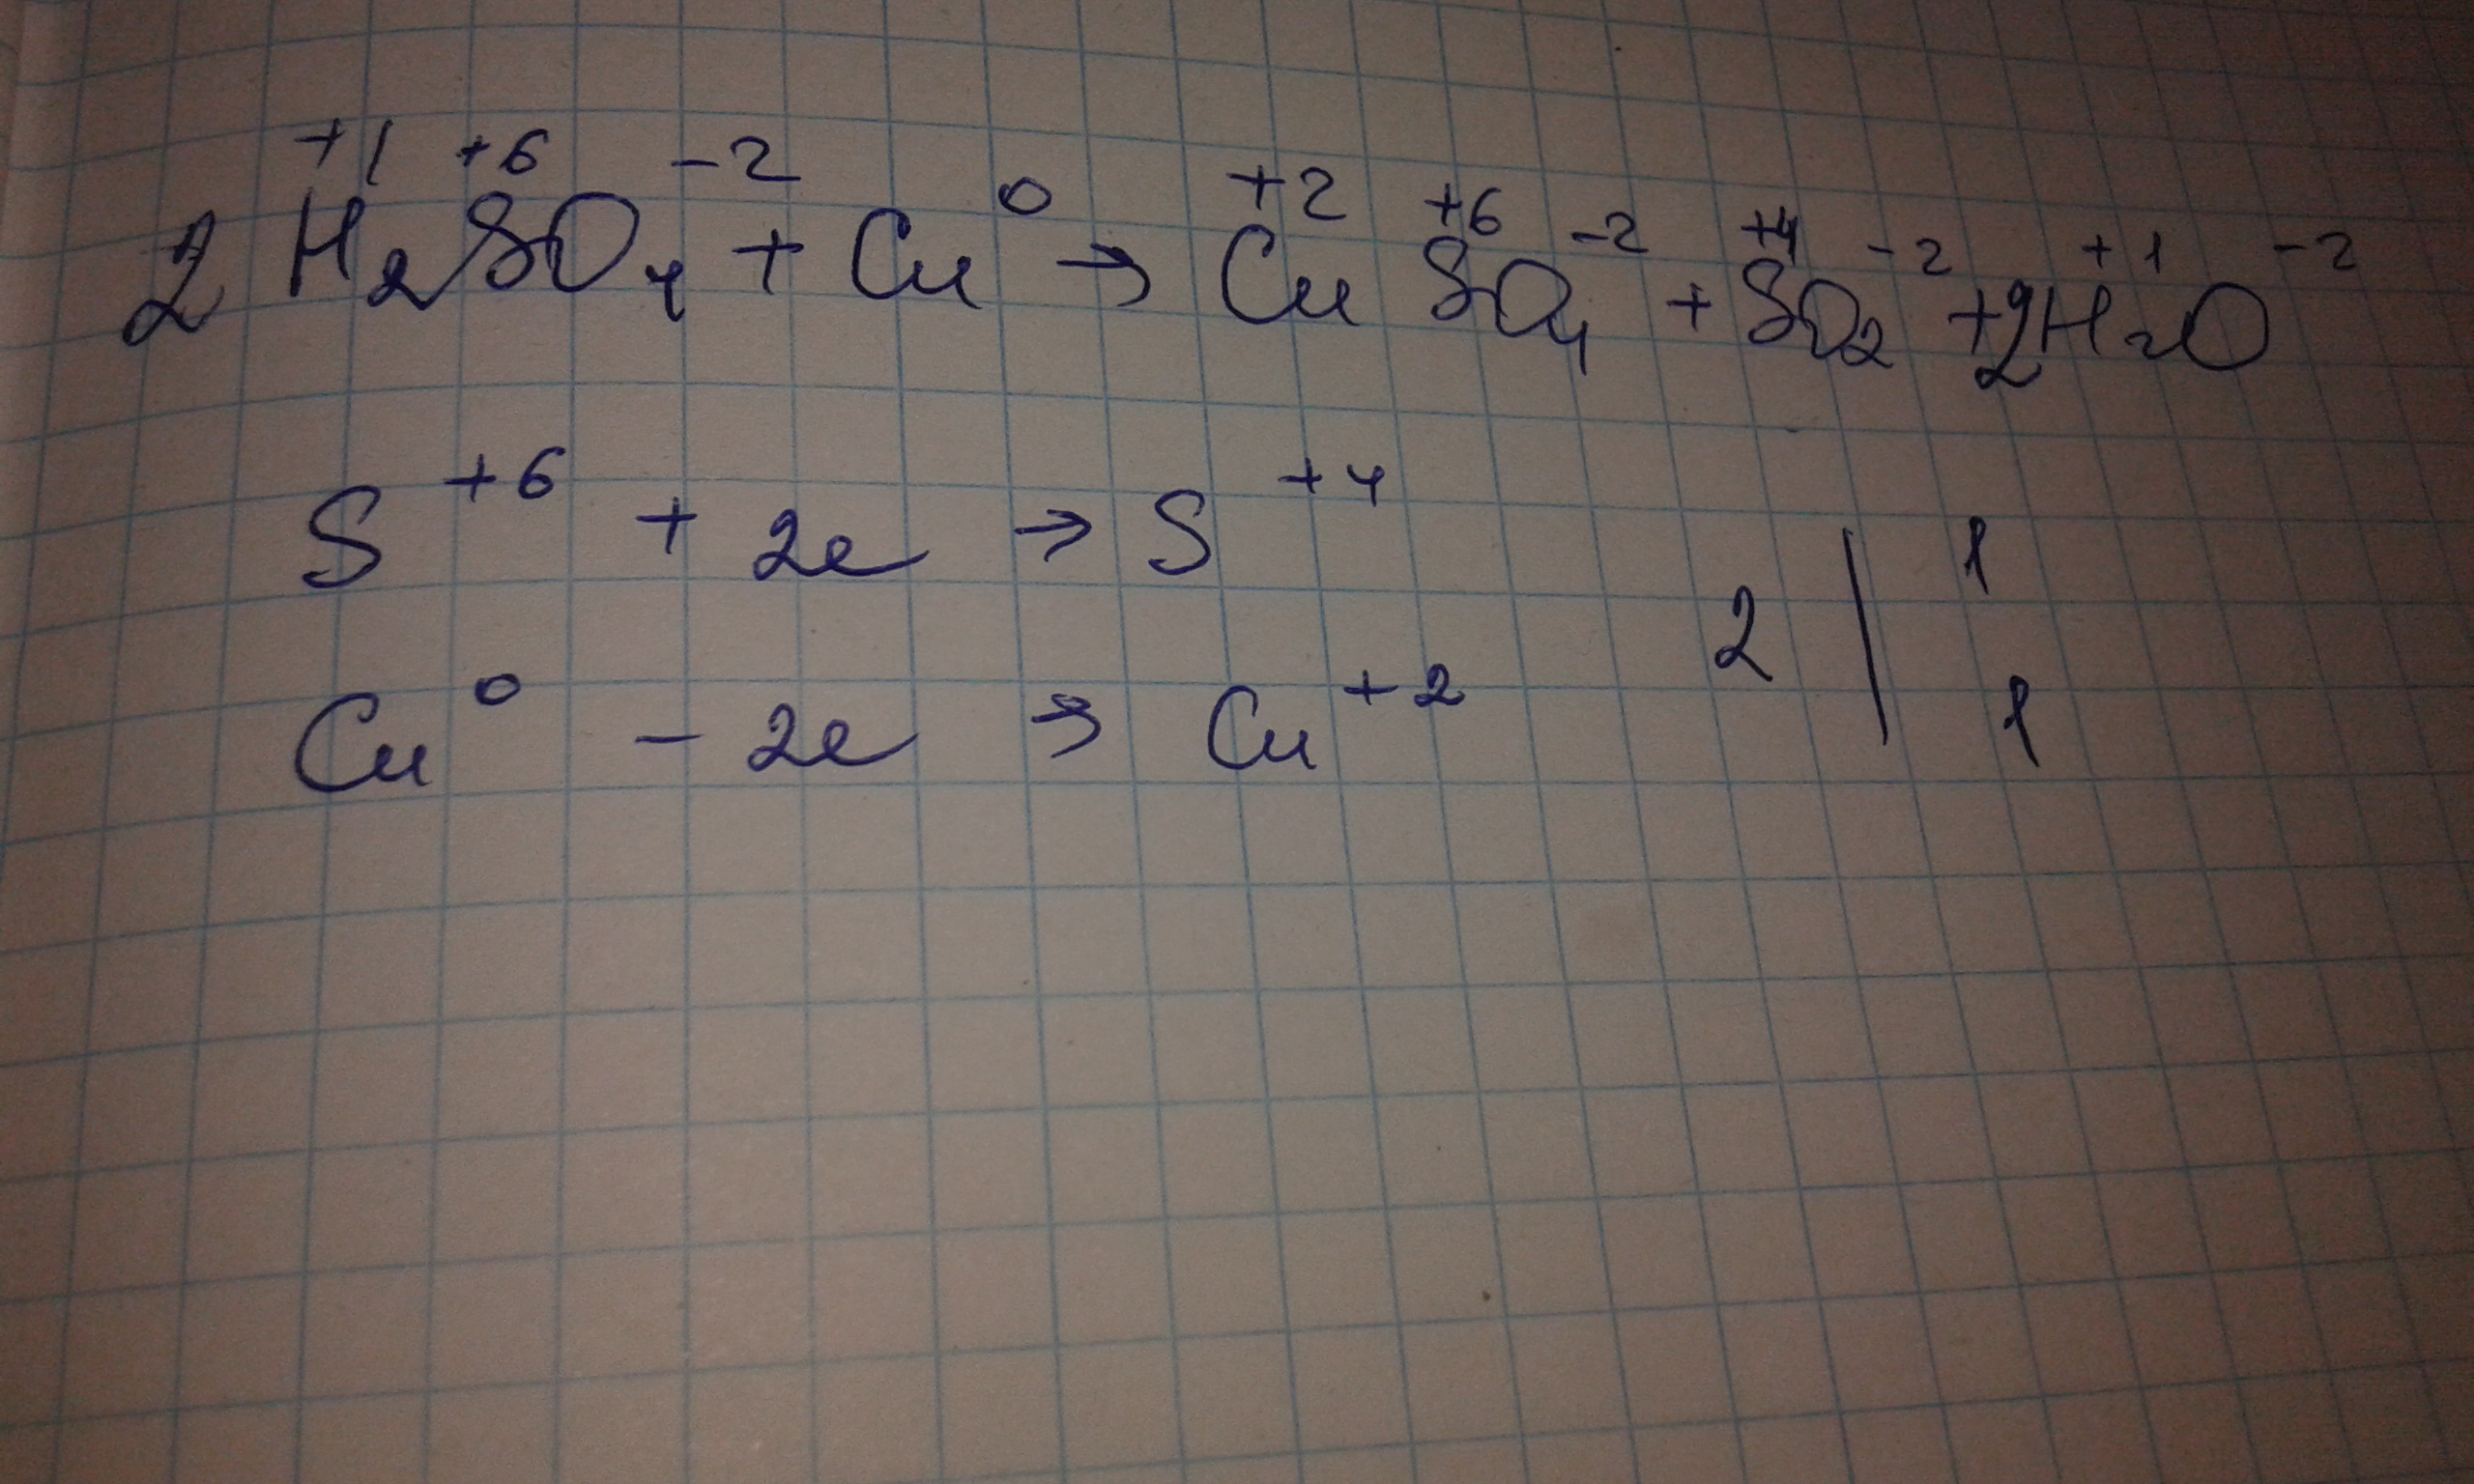 Cu h2so4 cuso4 h2. Реакция cu h2so4. Cu+h2so4 конц уравнение. Cu h2so4 cuso4 so2 h2o окислительно восстановительная реакция. Cu+h2so4 электронный баланс.